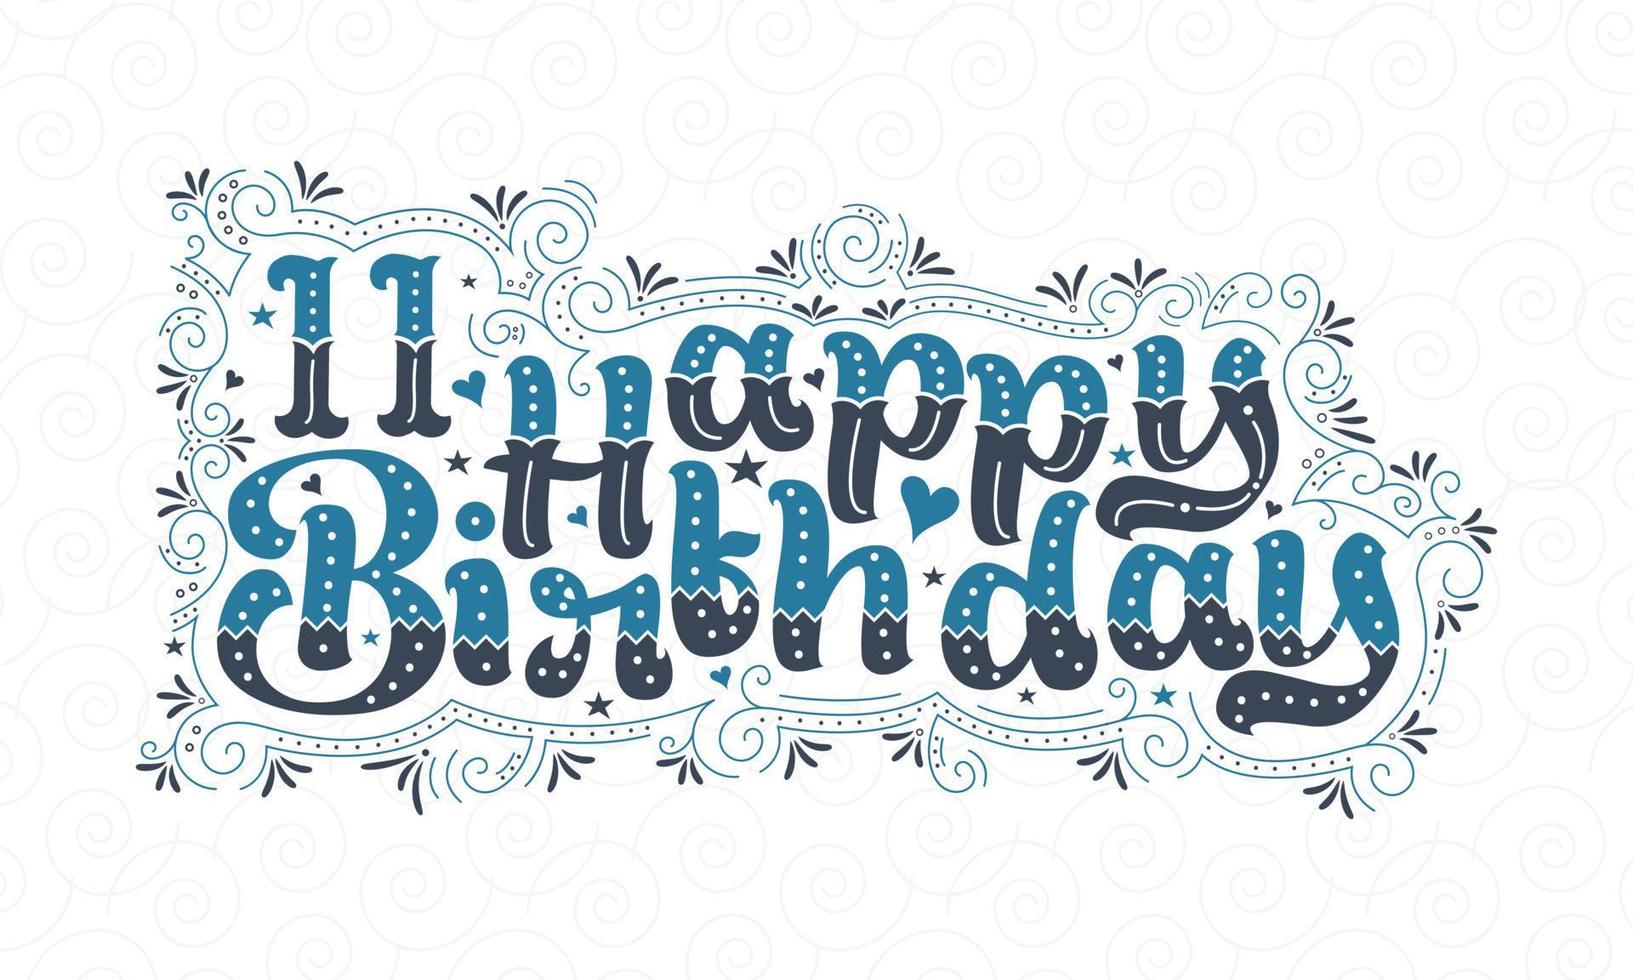 11e lettrage de joyeux anniversaire, 11 ans d'anniversaire belle conception de typographie avec des points, des lignes et des feuilles bleus et noirs. vecteur